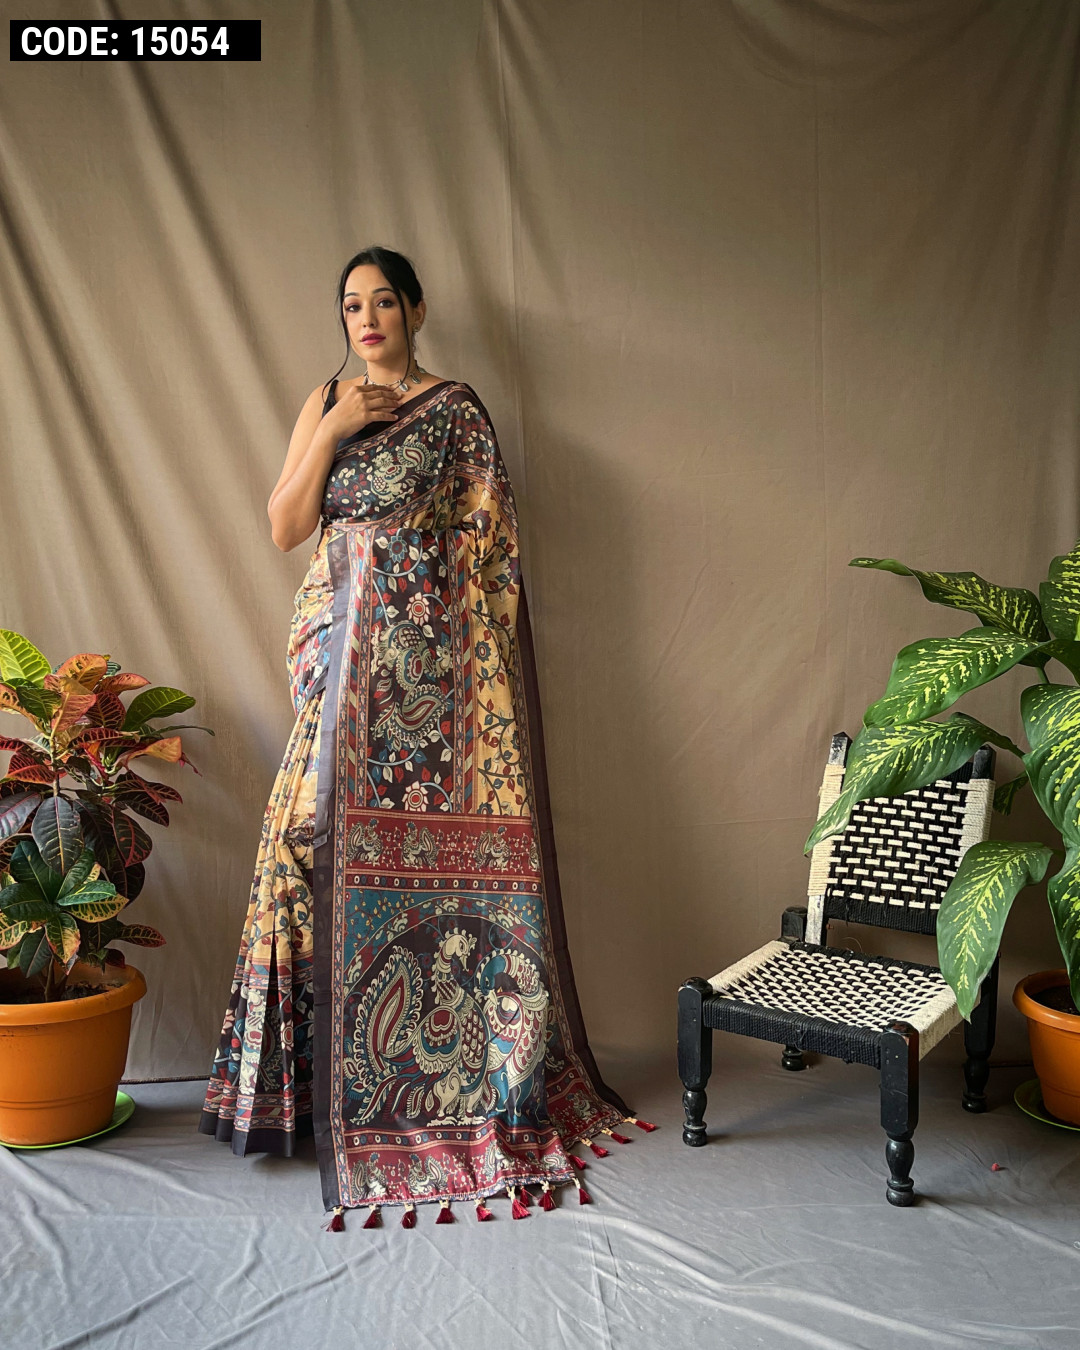 Malai Silk black banarasi saree with Meena booti - Walmart.com